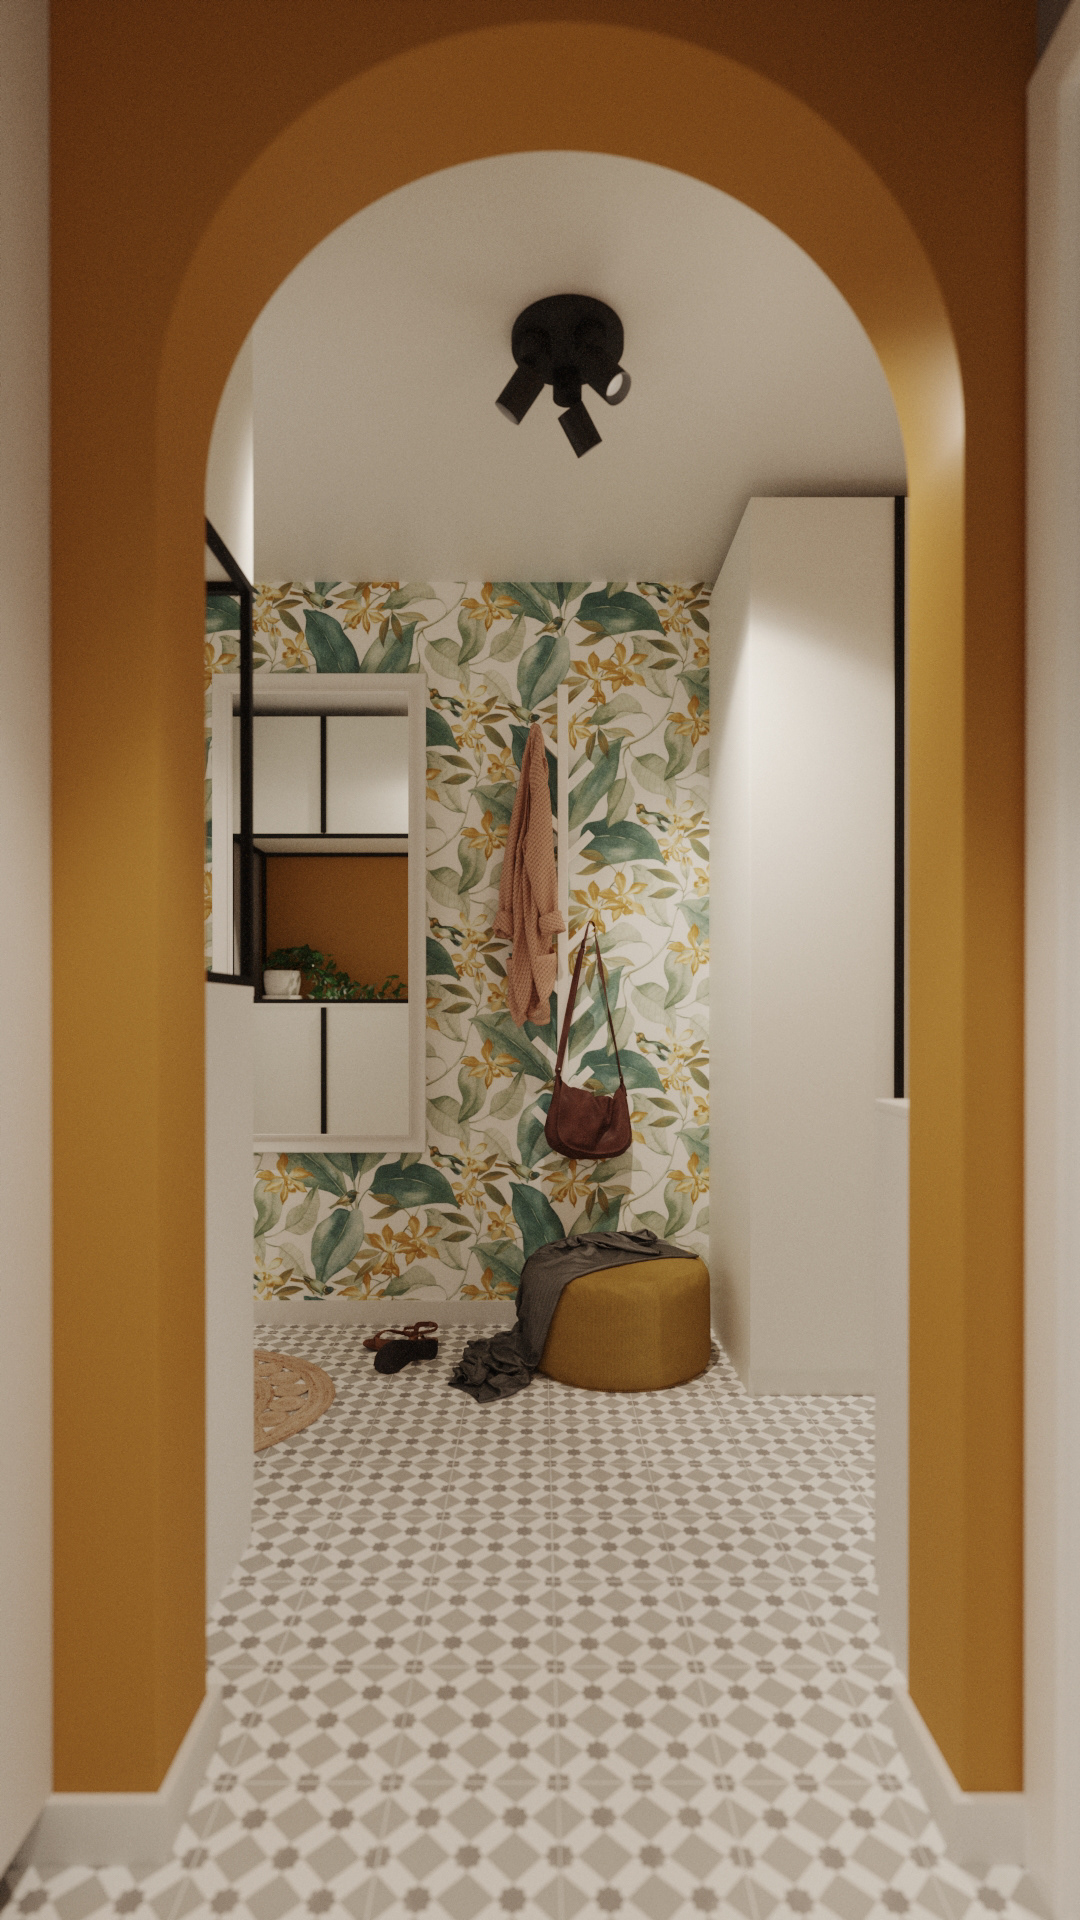 3ds max archviz CGI FStorm indoor Render rendering studio visualization